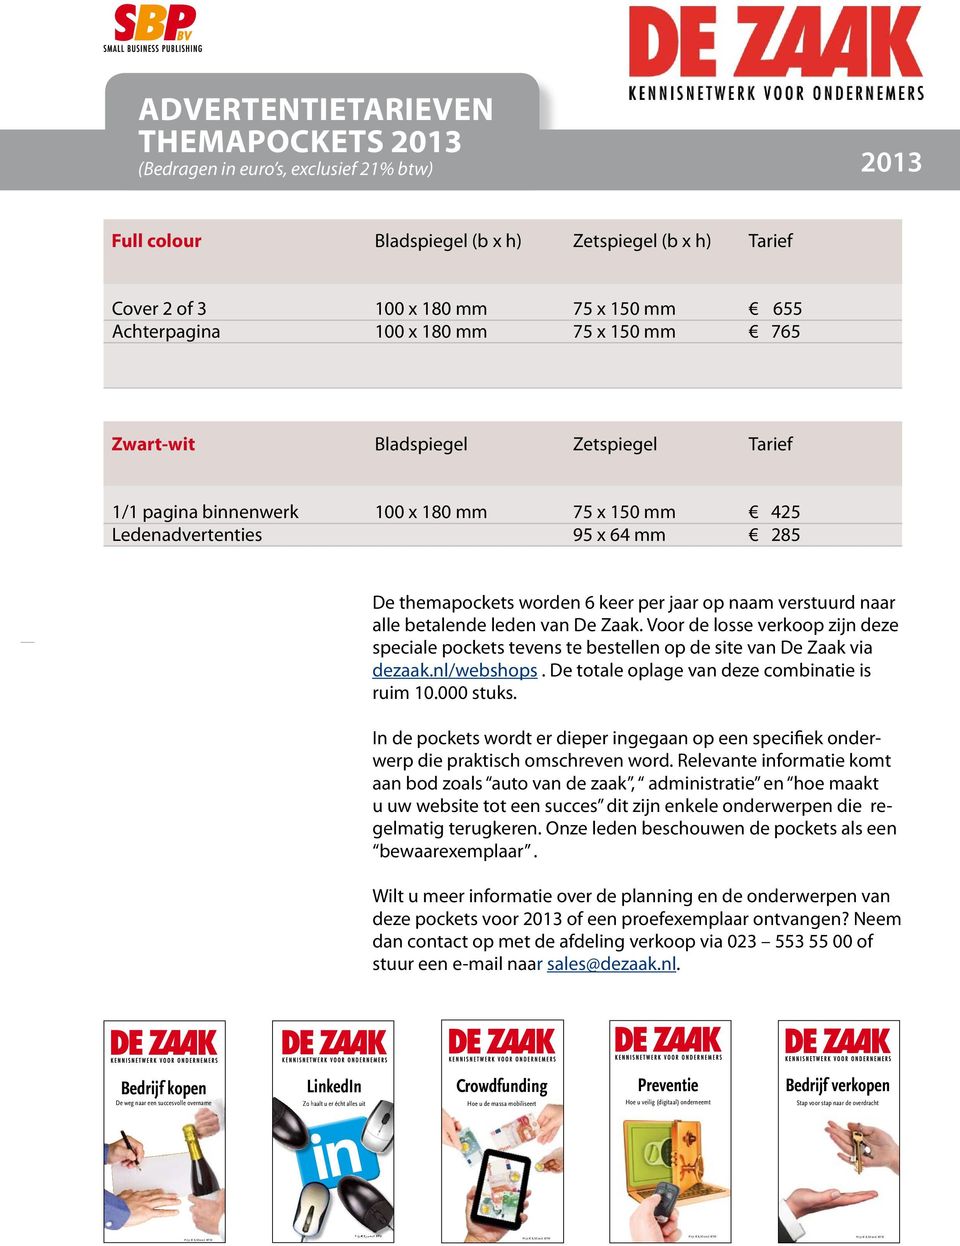 nl Pocket_Veiligheid-cover.indd 1 DeZaak_Pocket_Bedrijf_verkopen.indd 1 06-08-12 13:32 13-12-11 11:32 Pocket_COVER-Crowdfunding-DEF.